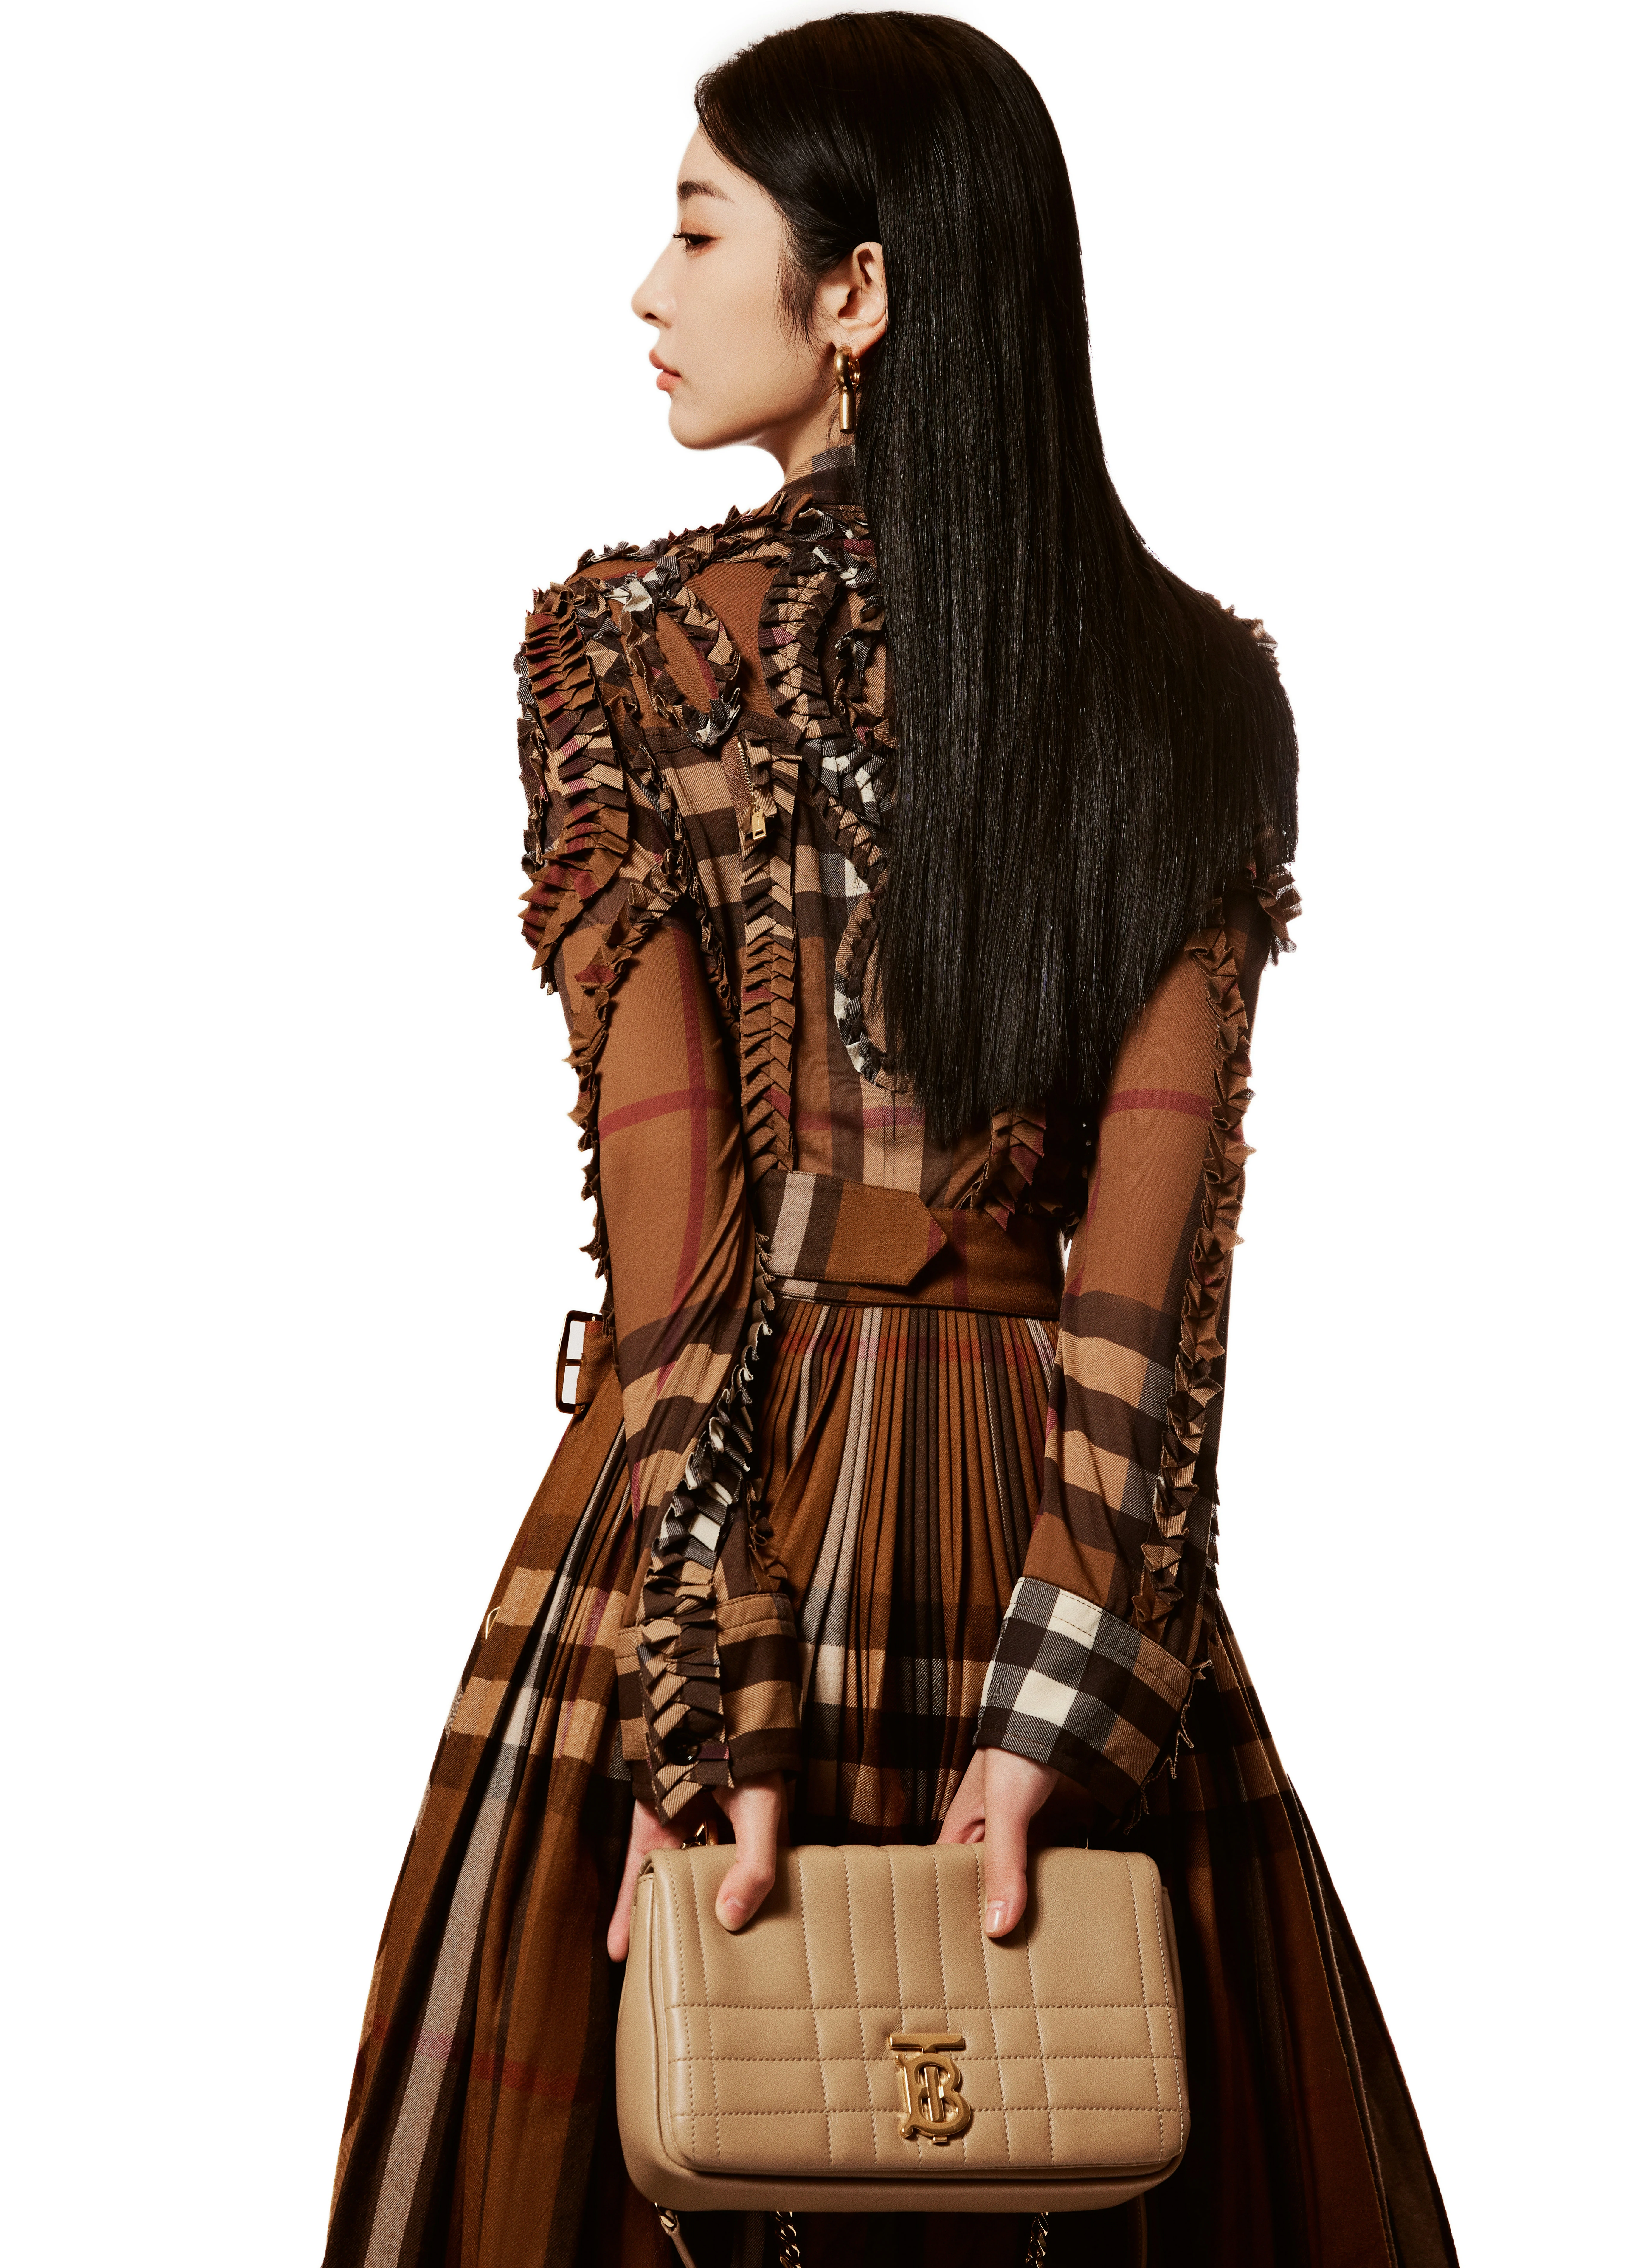 赵小棠身着棕色格纹连衣裙，细节丰富、充满设计感,10